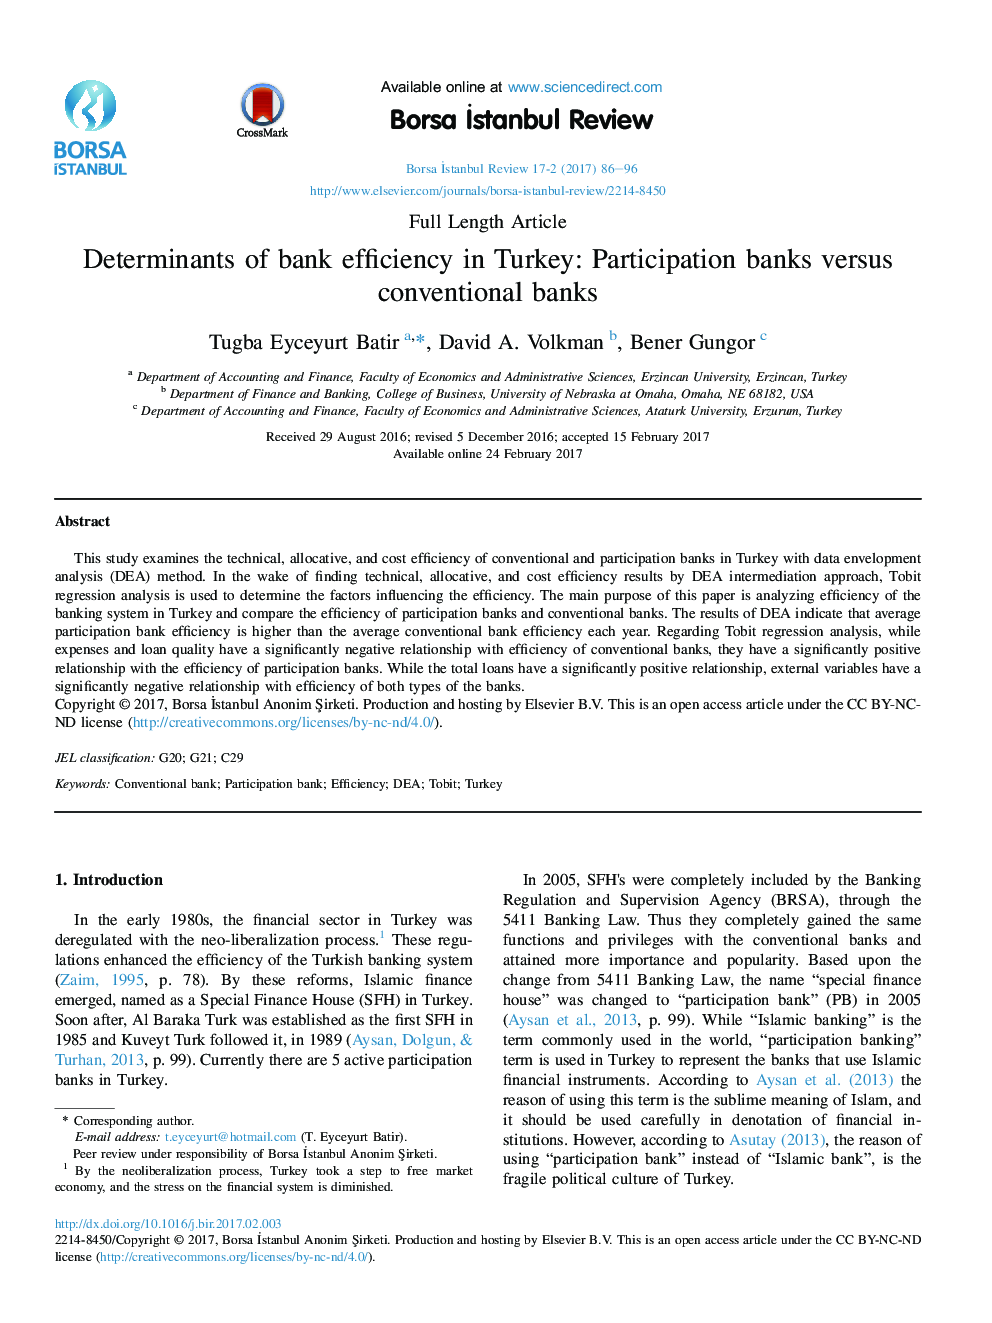 عوامل تعیین کننده بهره وری بانک در ترکیه: بانک های مشارکت در برابر بانک های متداول 